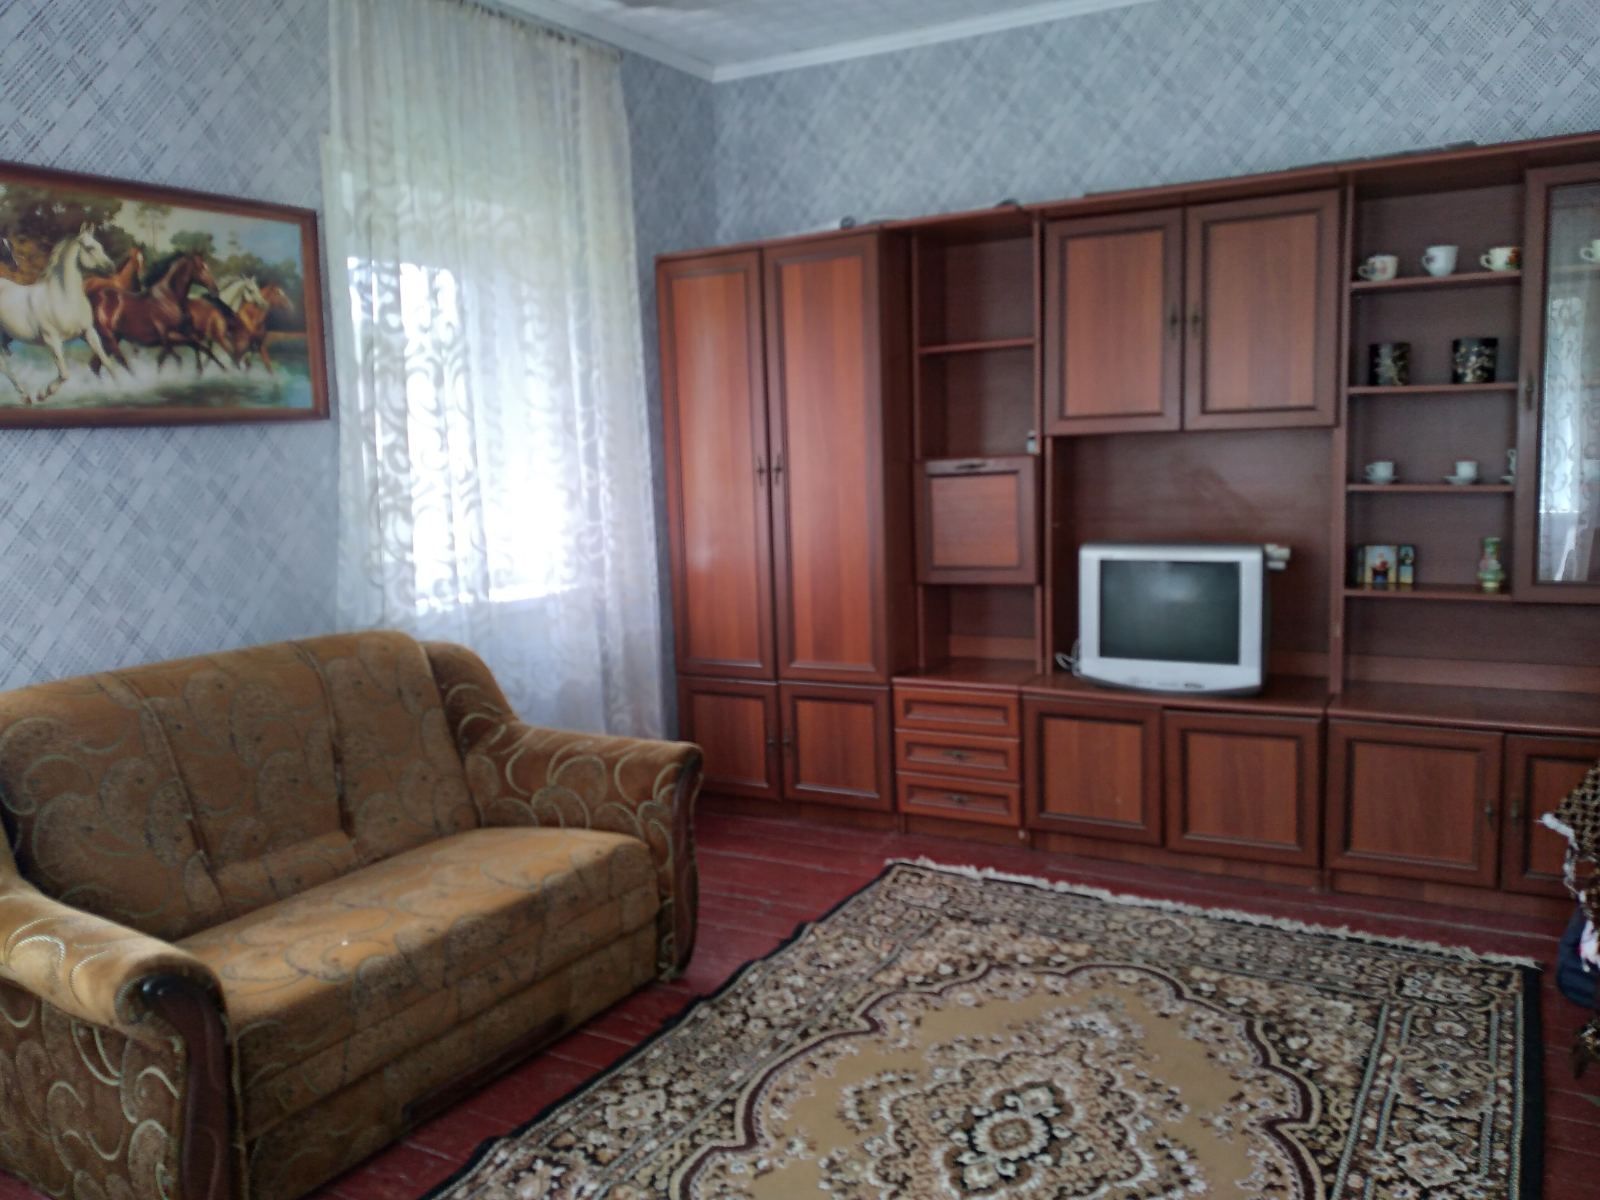 Продам будинок в місті Гребінка (130 км від Києва по гарній дорозі)